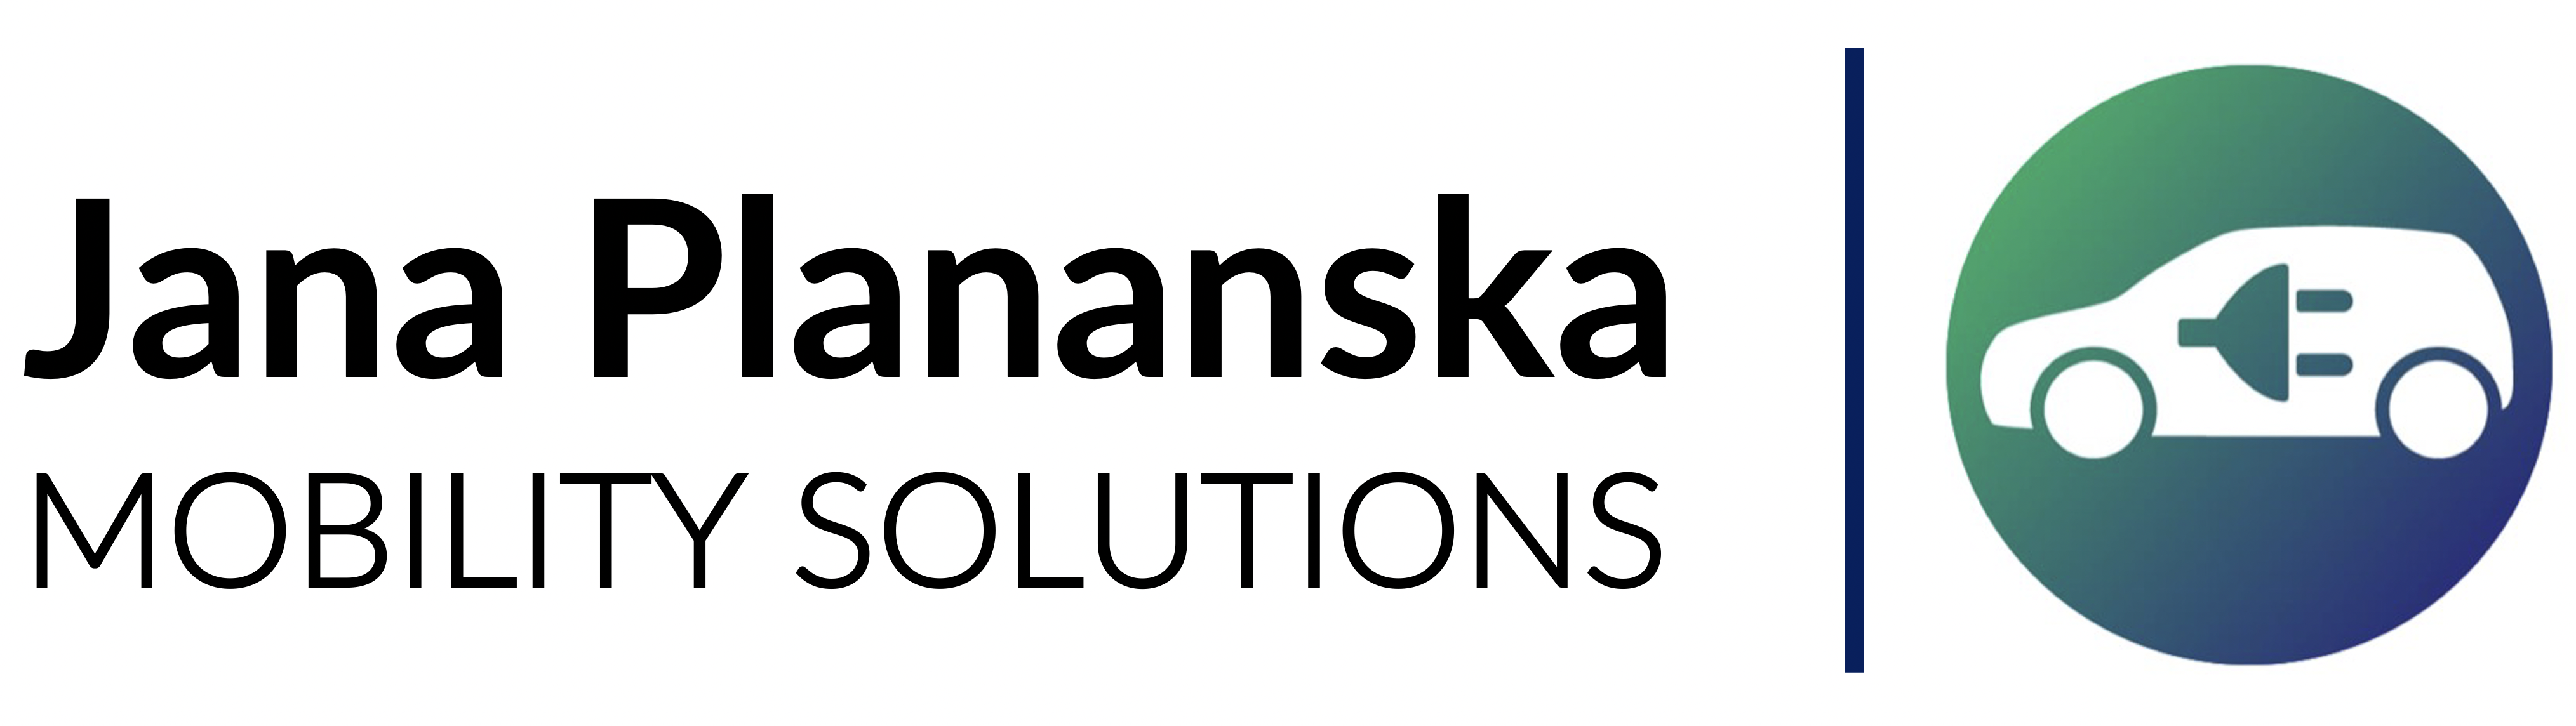 Jana Plananska Mobility Solutions GmbH